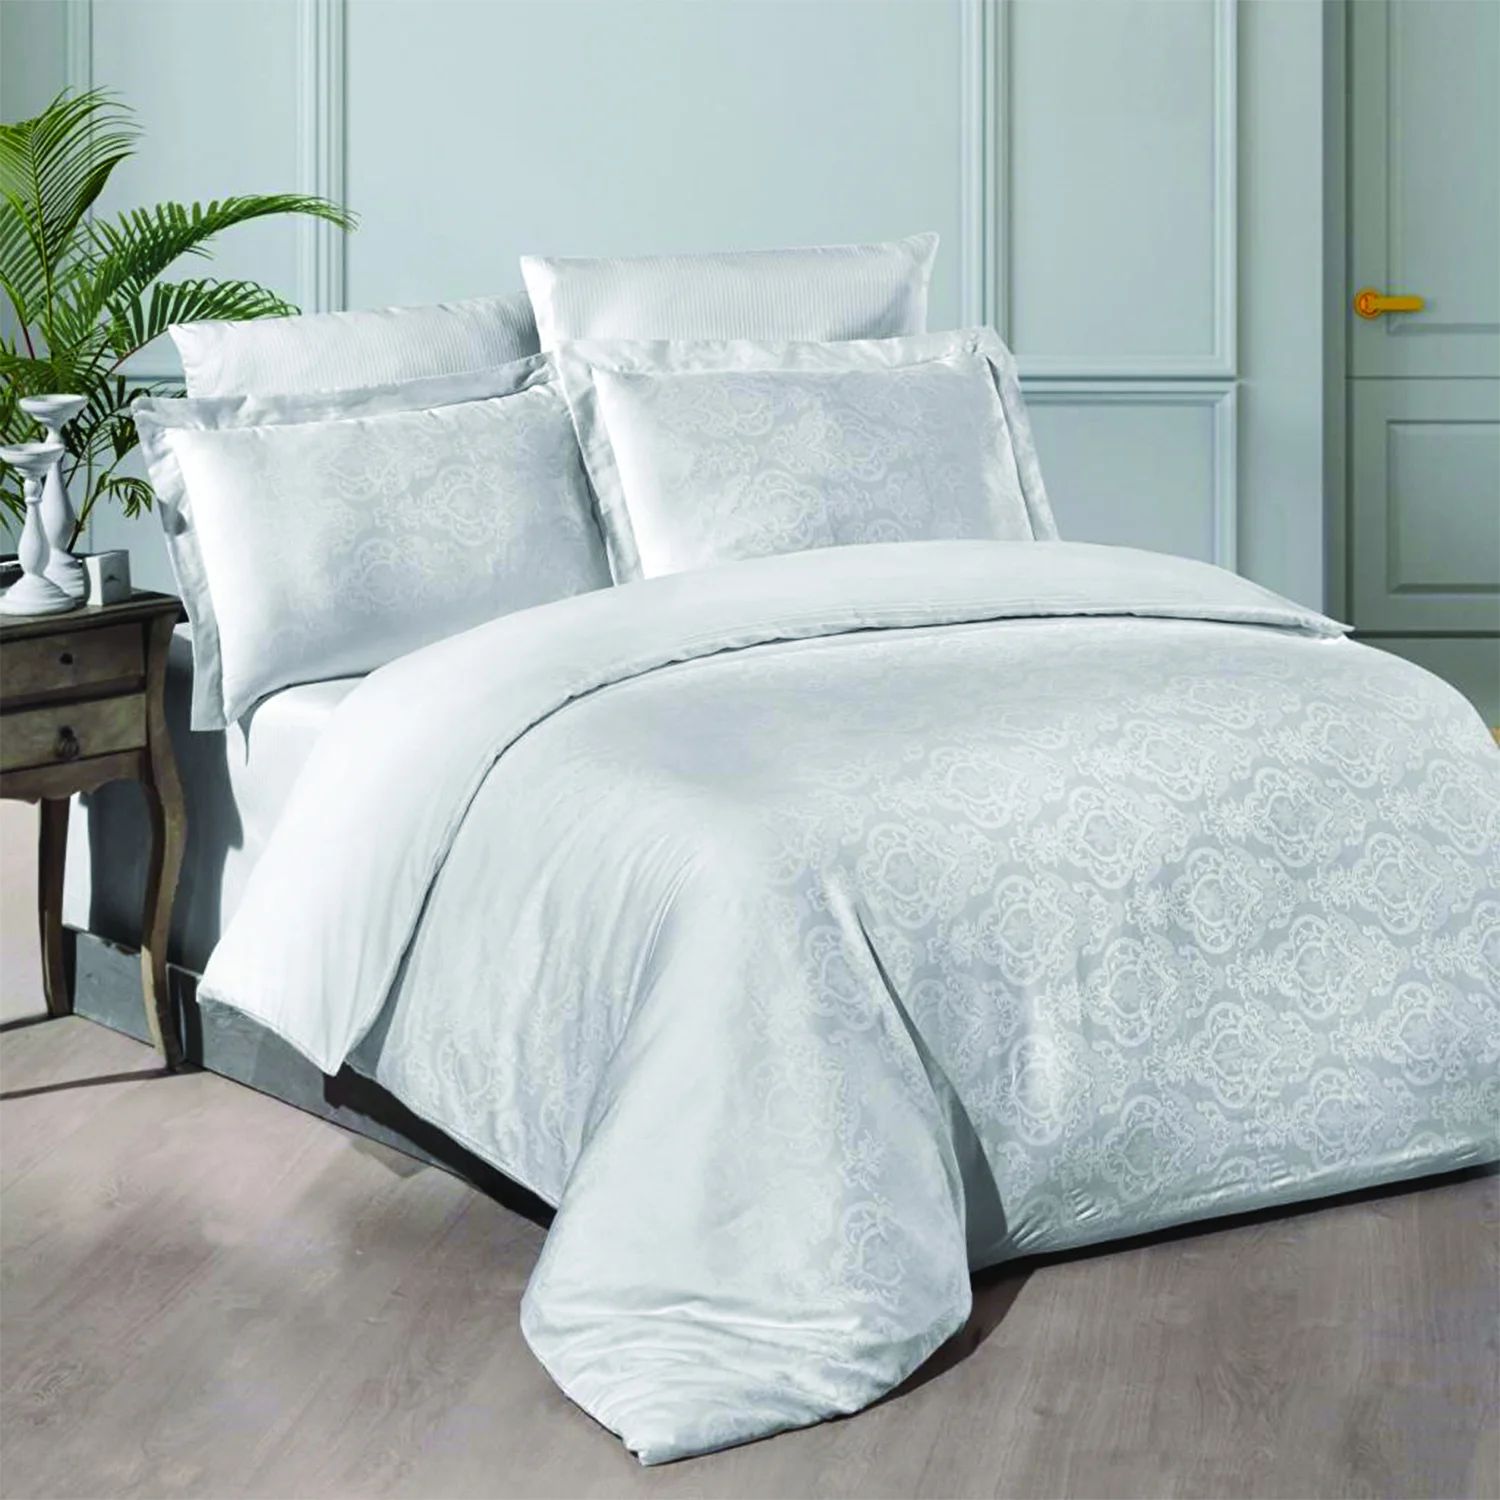 Комплект постельного белья Maxstyle Жаккардовый атласный комплект белых двойных пододеяльников Katya White beyaz saray hotel